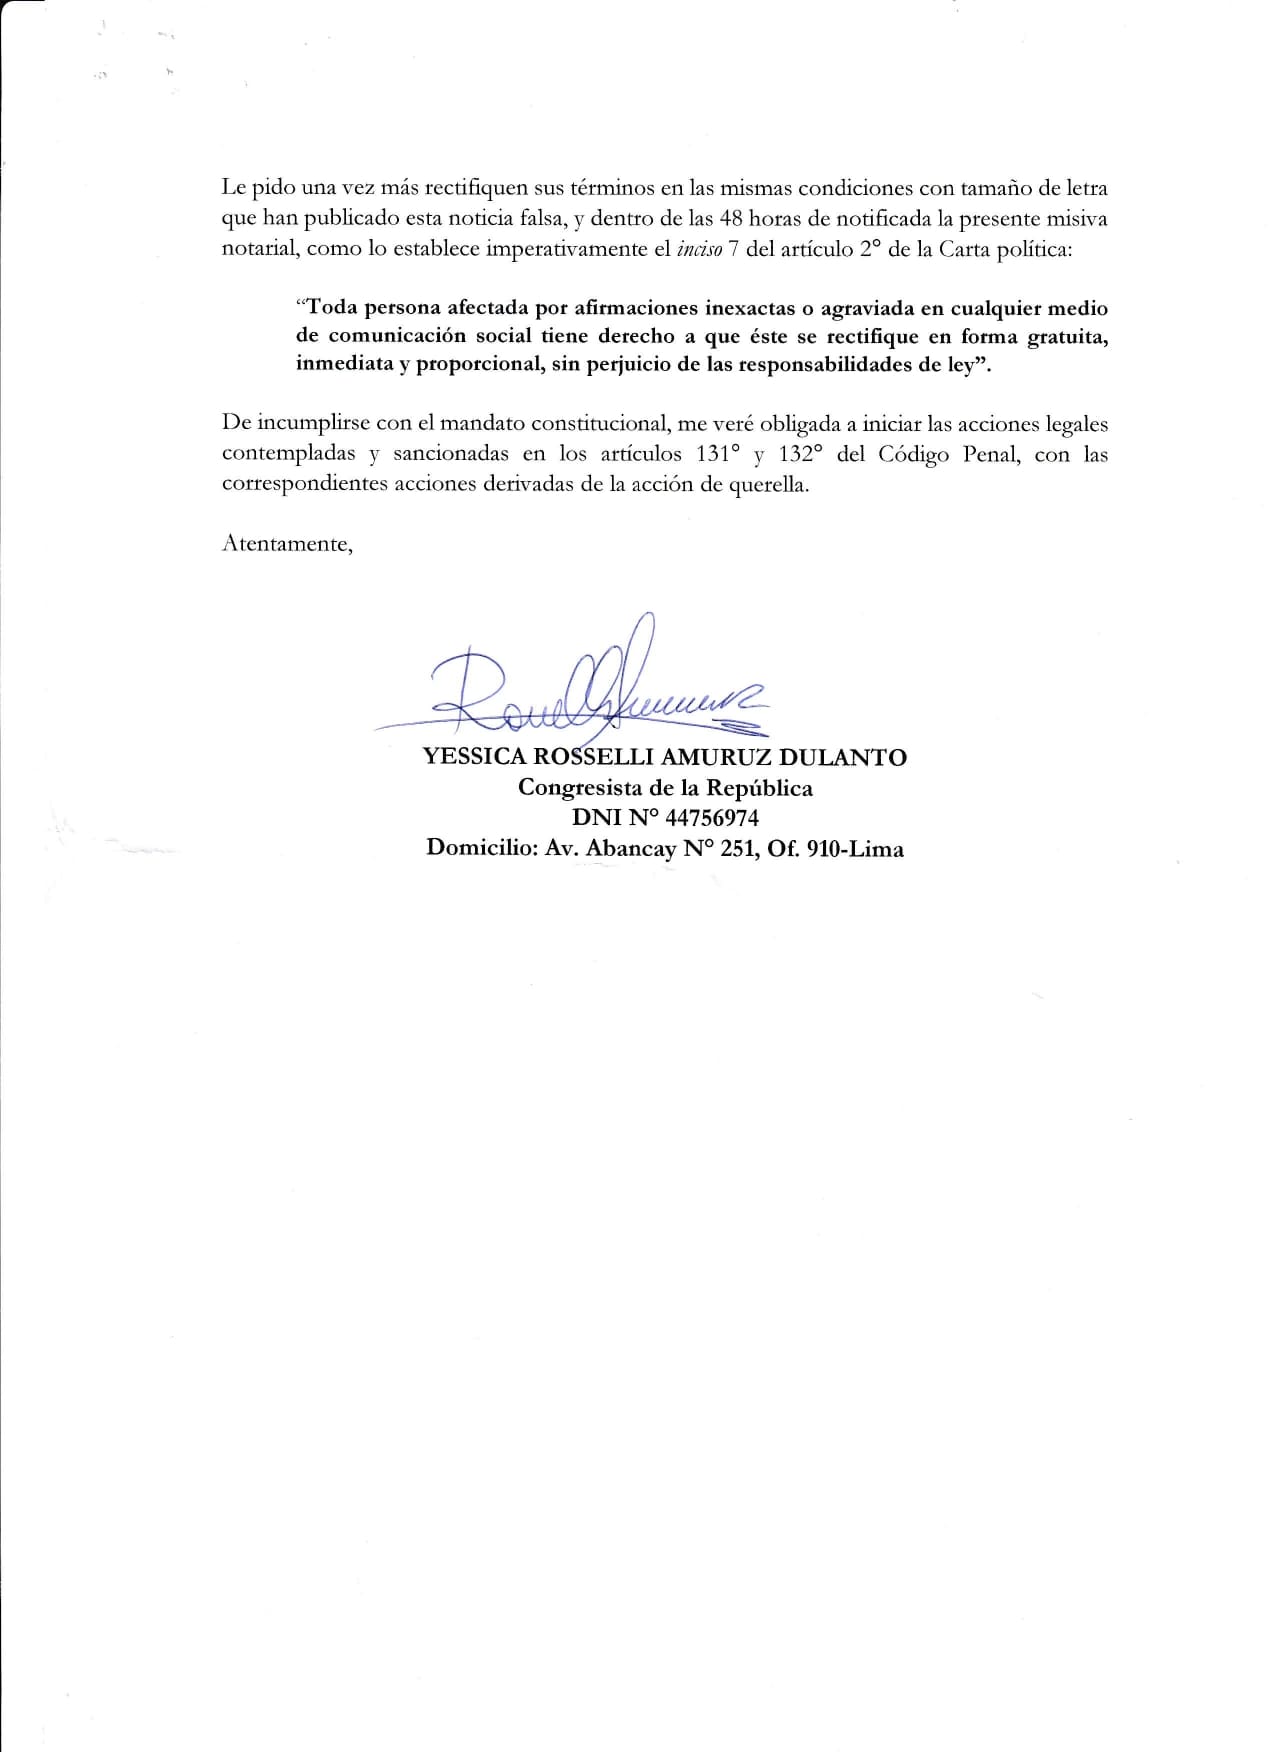 Carta notarial enviada por la congresista juerguera.